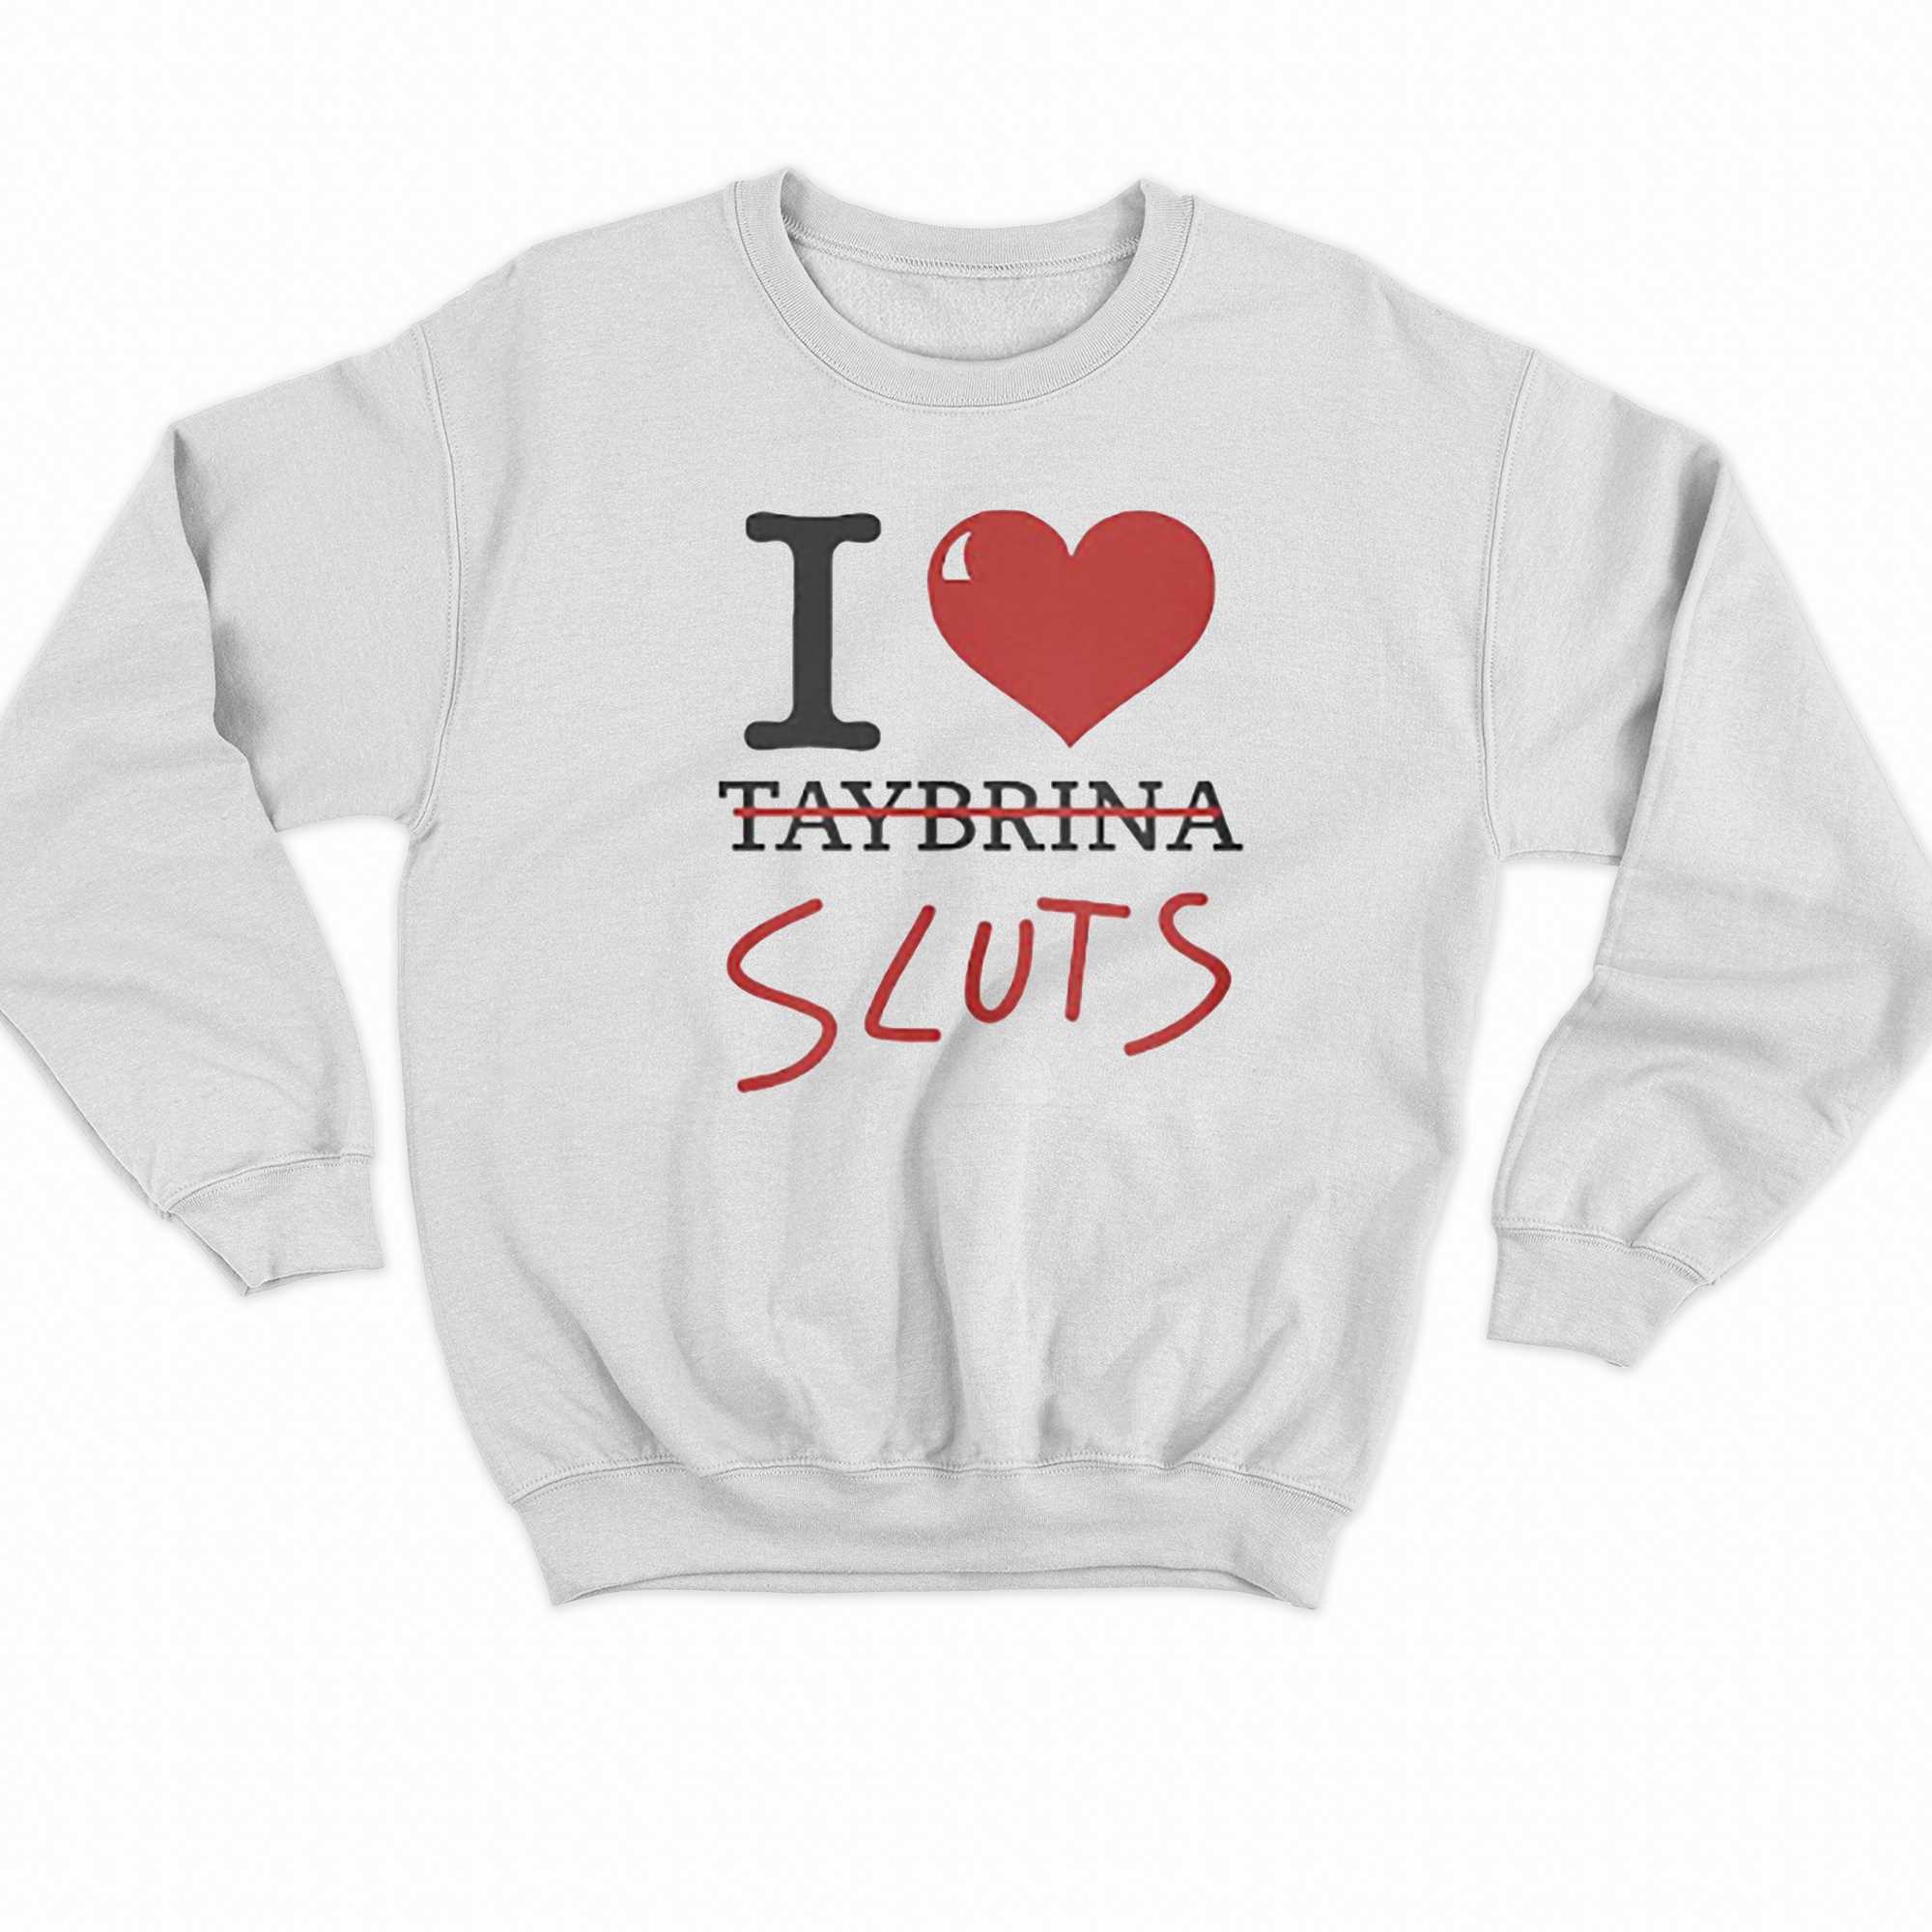 I Love Sluts Not Taybrina T-shirt 